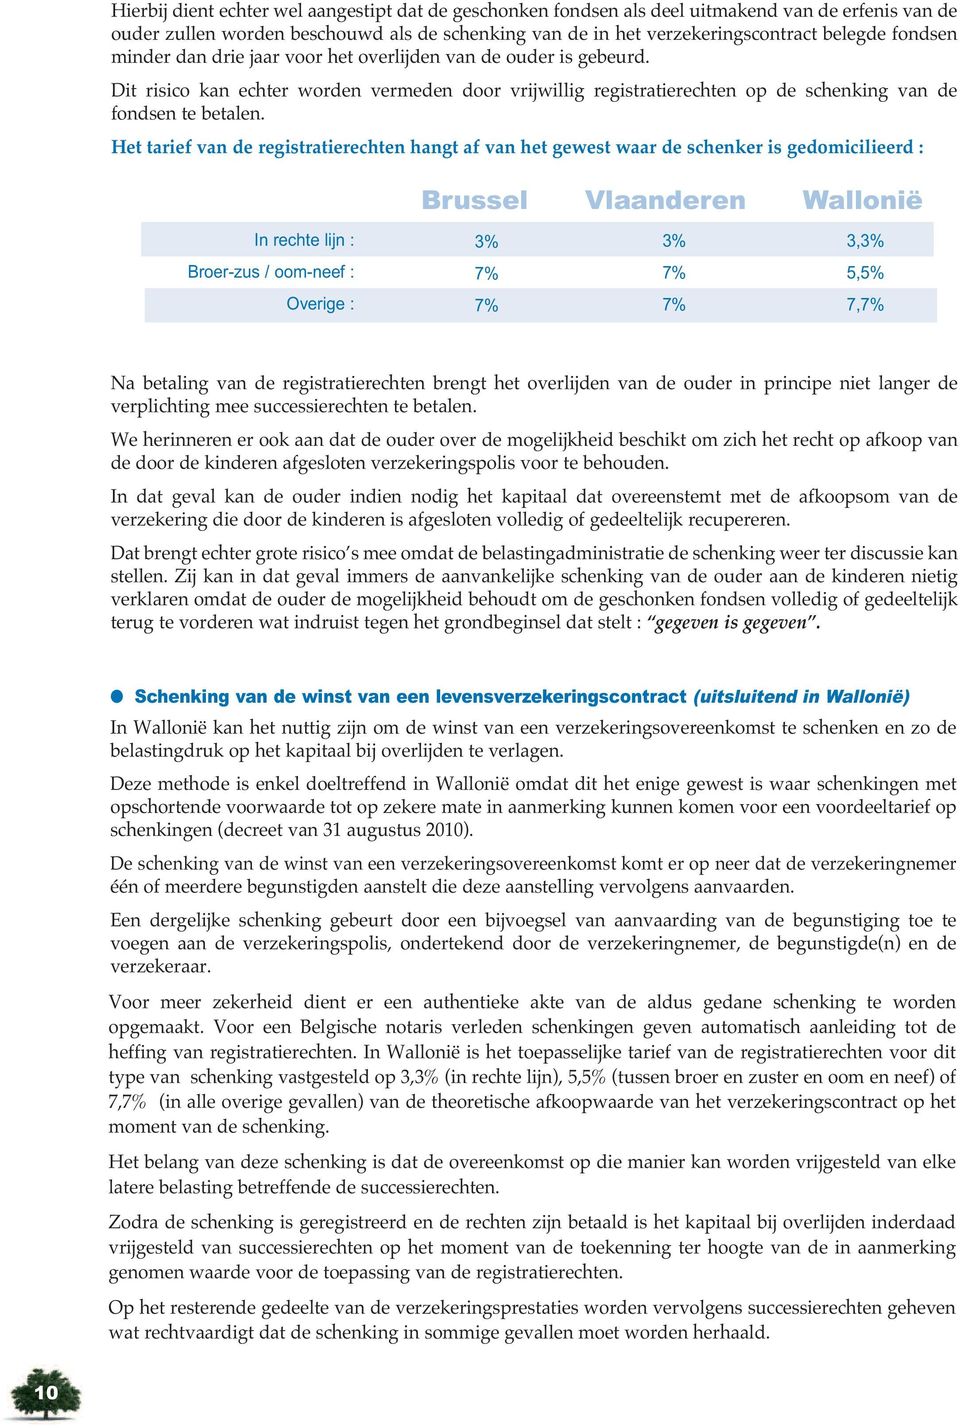 Het tarief van de registratierechten hangt af van het gewest waar de schenker is gedomicilieerd : Brussel Vlaanderen Wallonië In rechte lijn : Broer-zus / oom-neef : Overige : 7% 7% 7% 7% 3, 5,5%